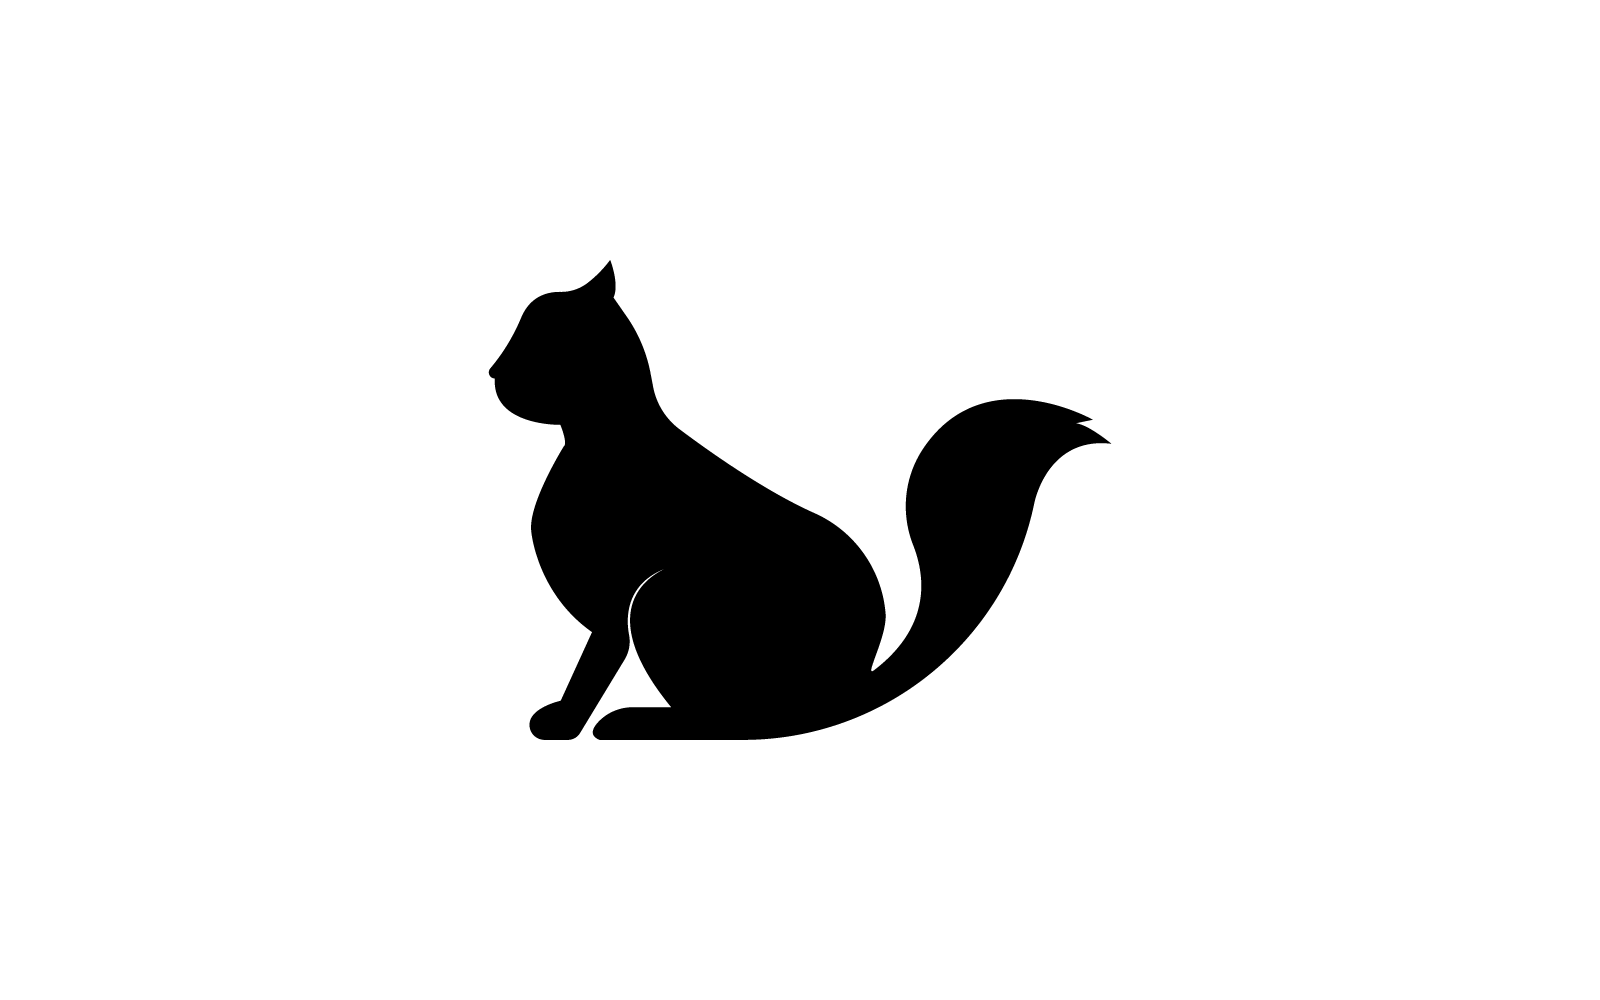 plantilla vectorial de diseño plano con logotipo de gato